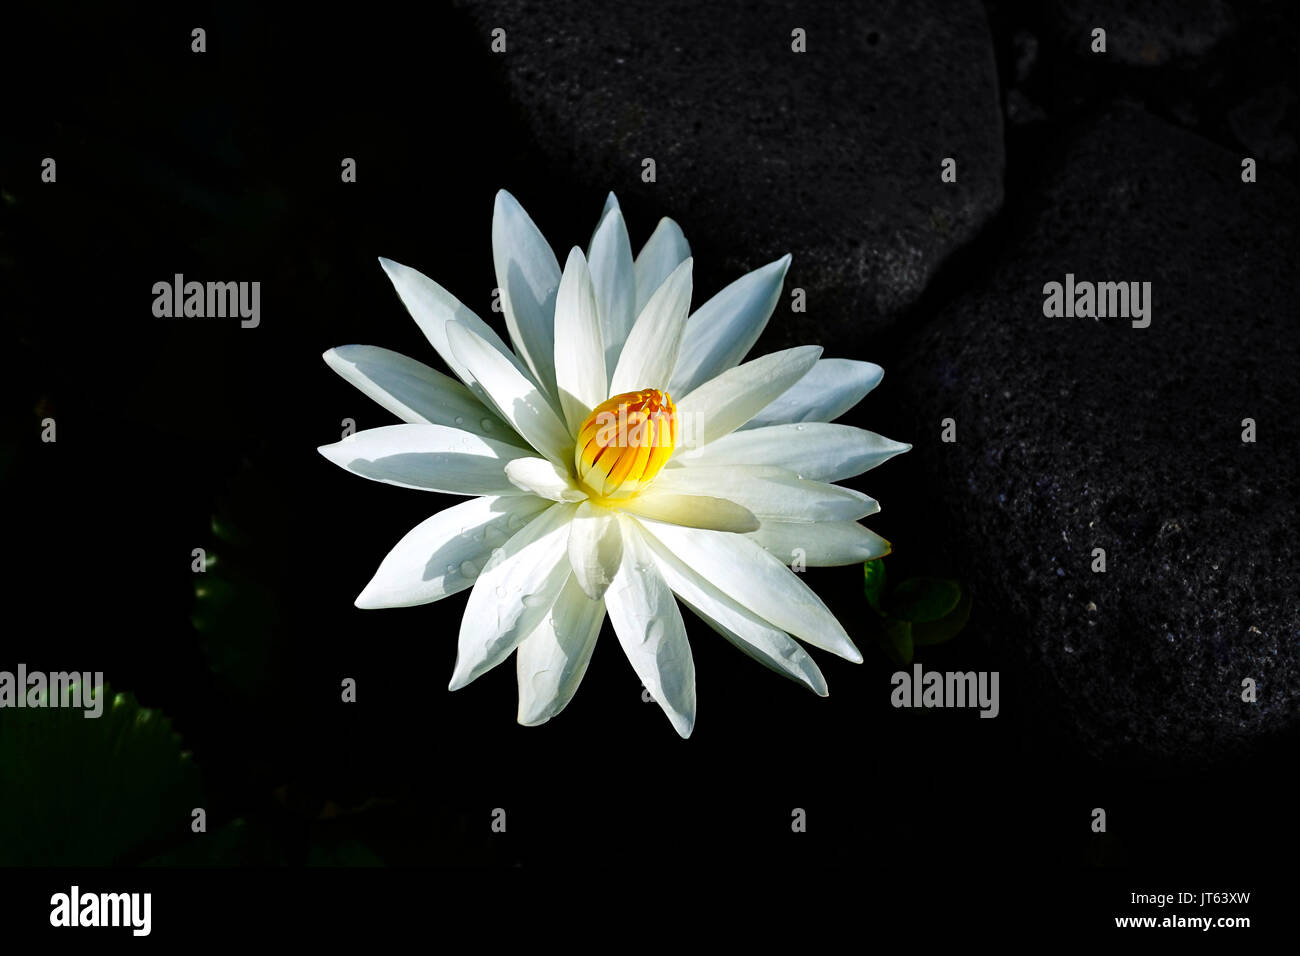 Close-up d'une fleur de lotus ouverte avec des pétales blancs et jaunes dans un noyau fermé lac sombre. Banque D'Images